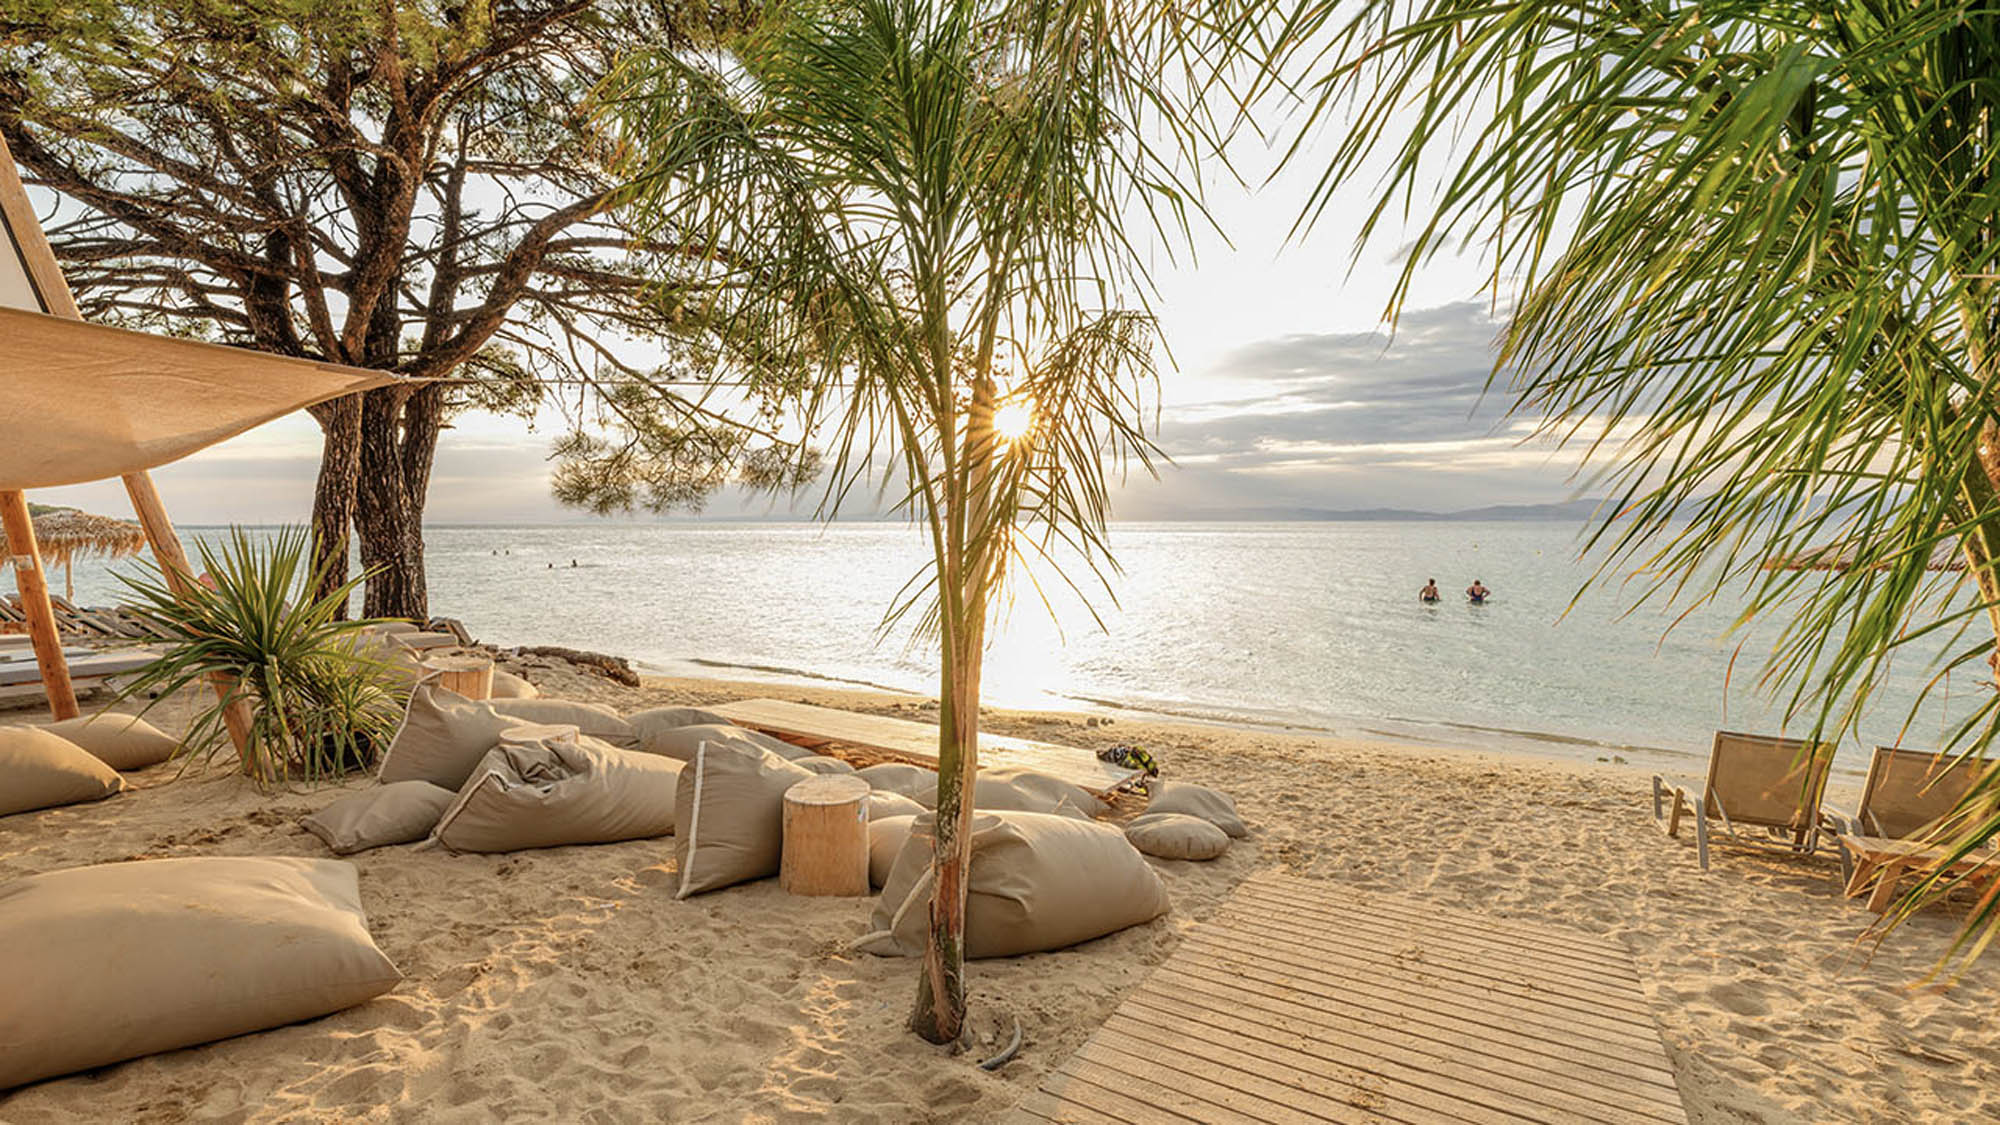 urokliwy, klimatyczny zakątek na plaży tuż przy hotelu na wyspie thassos, palma